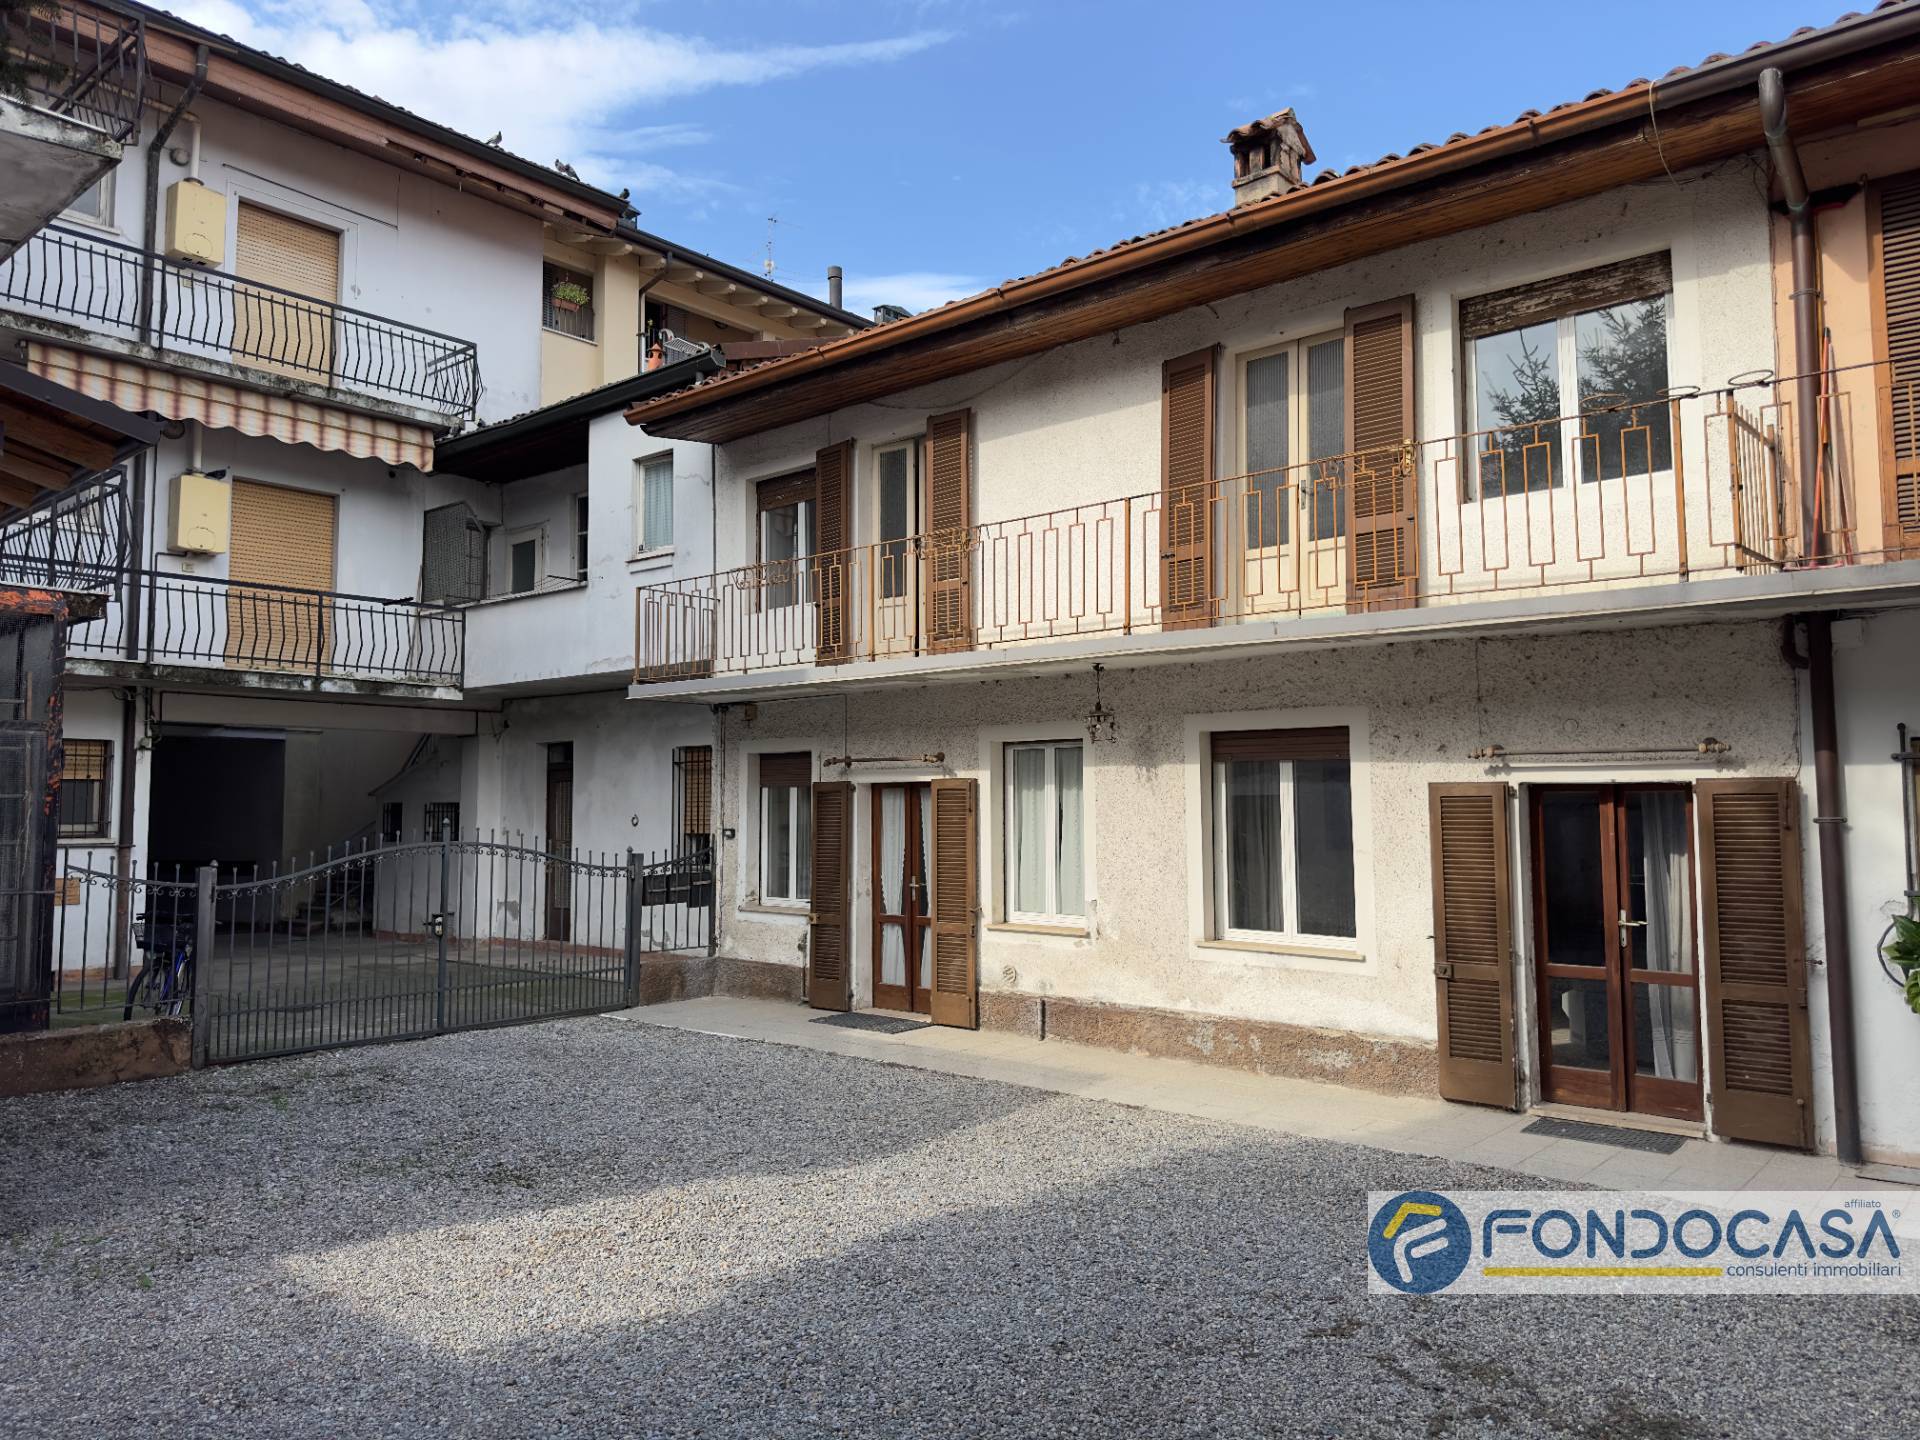 Appartamento in vendita a Coccaglio, 2 locali, prezzo € 32.000 | PortaleAgenzieImmobiliari.it